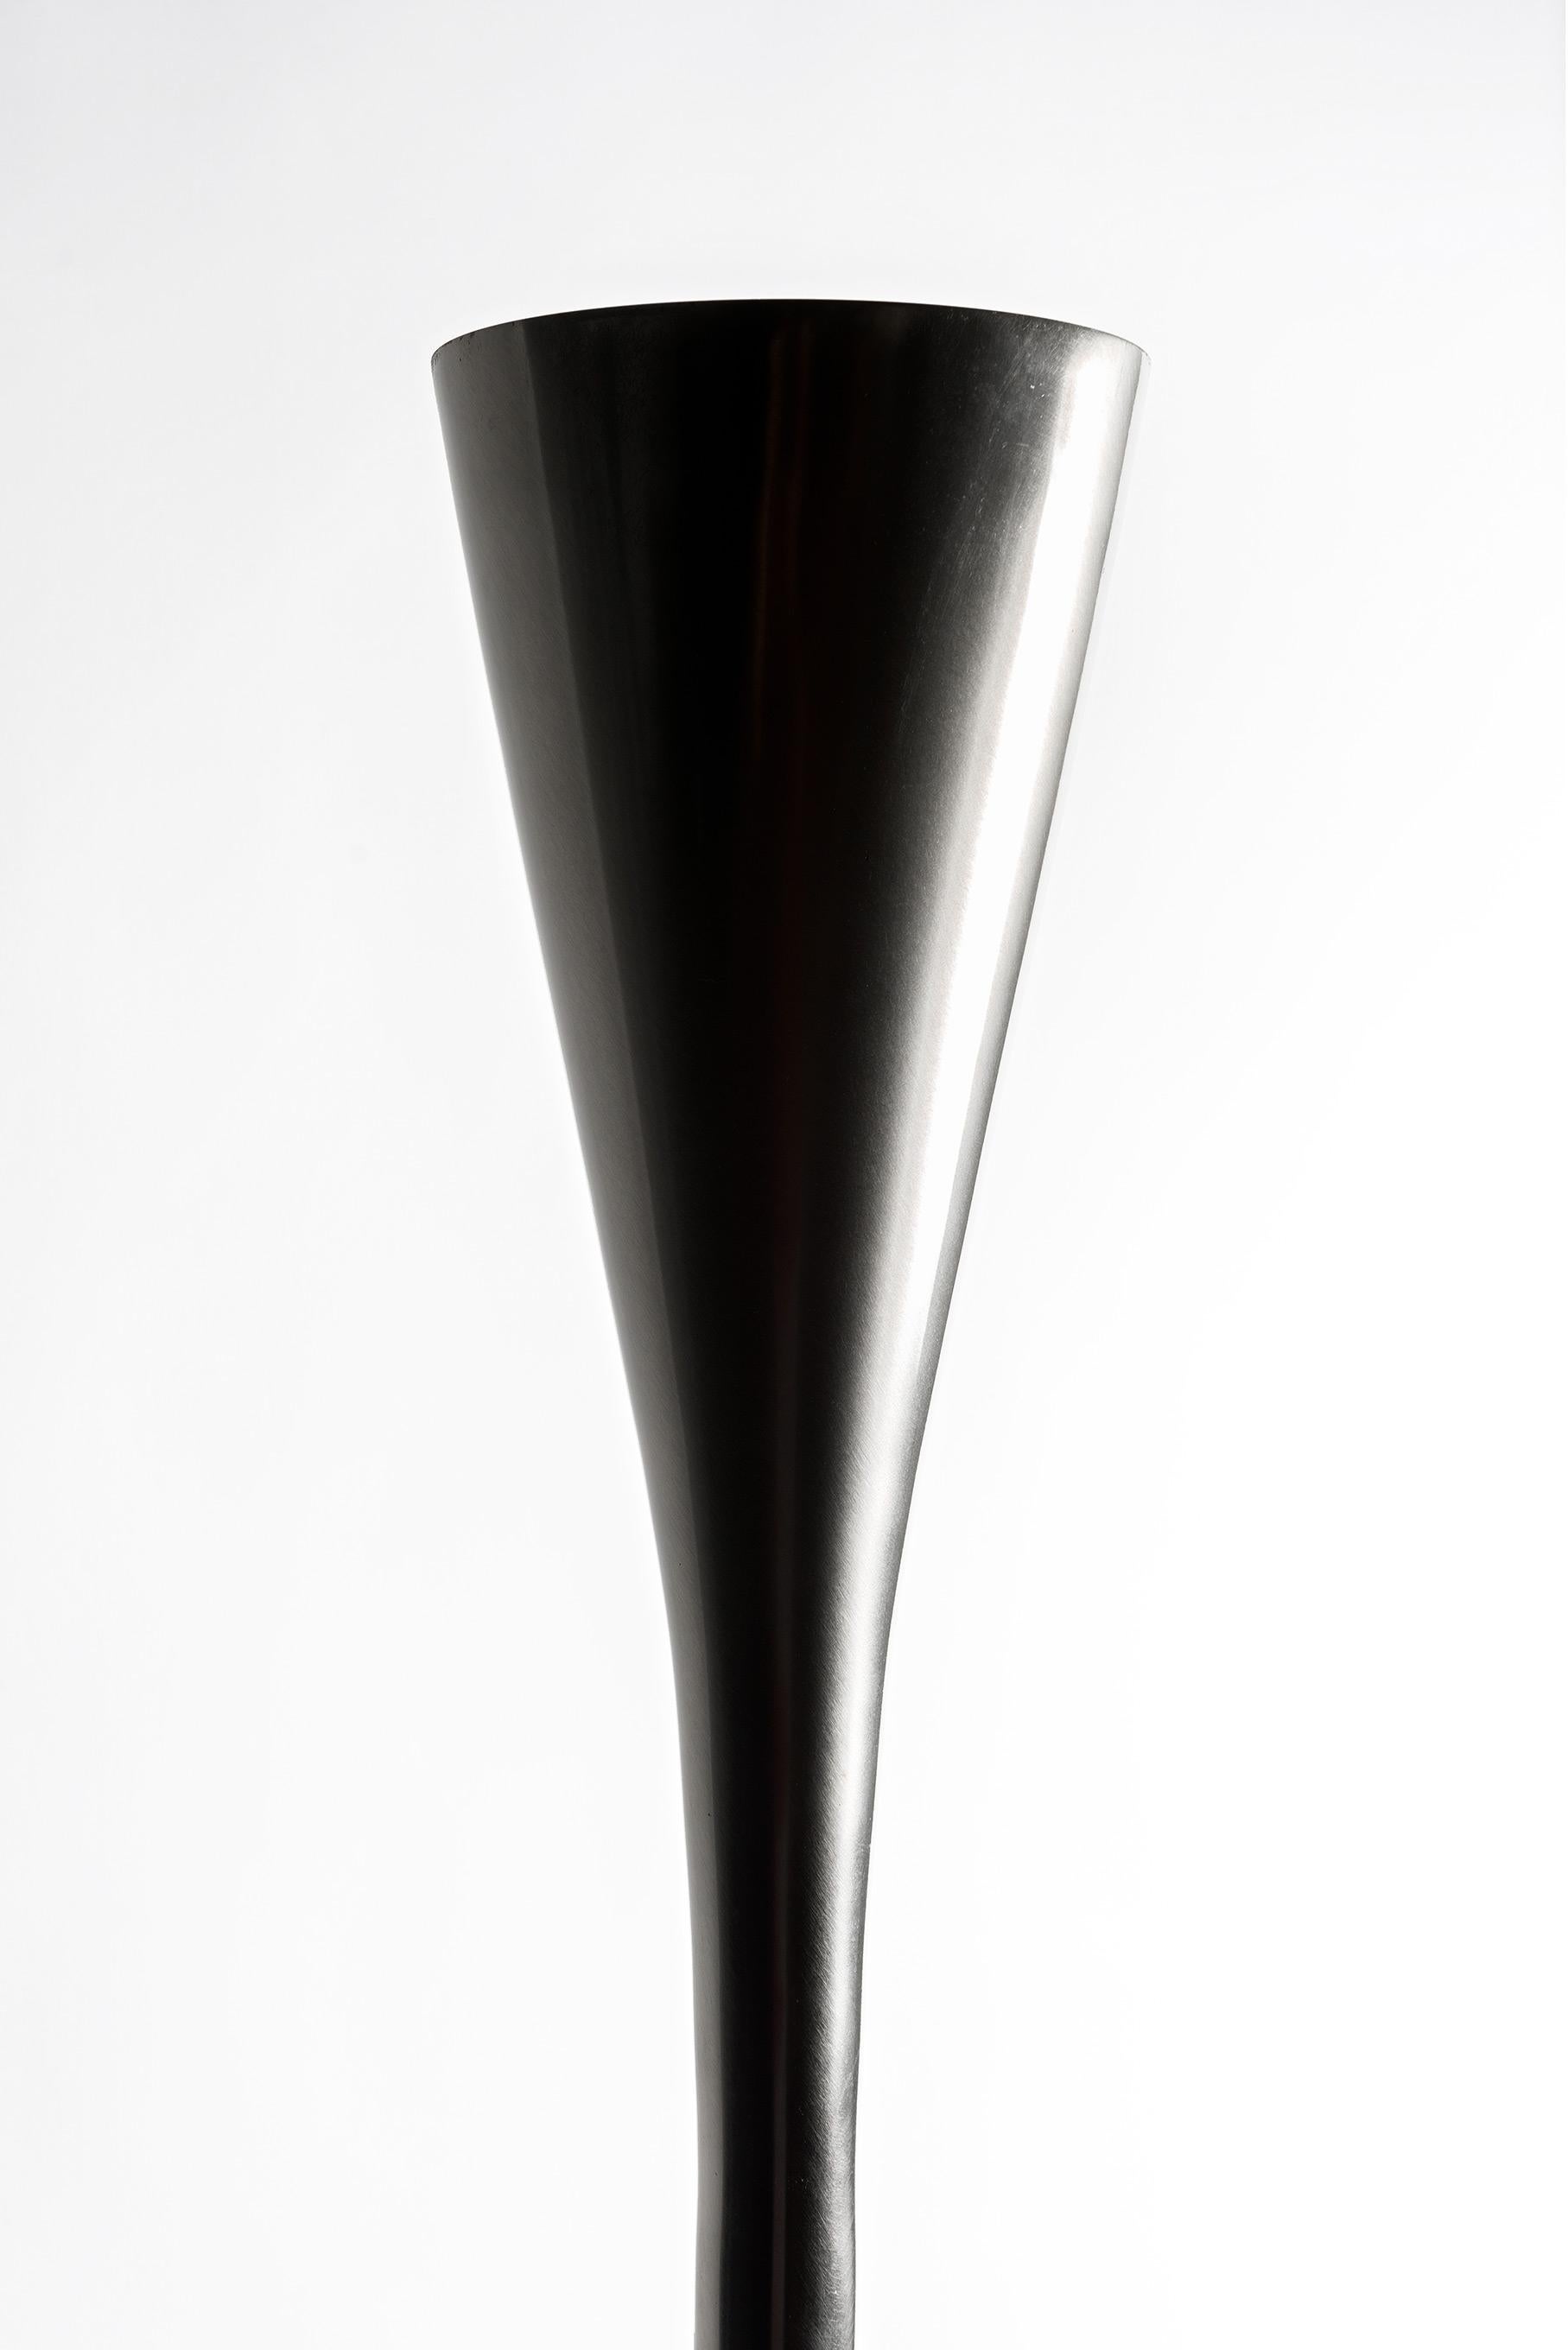 Luminator Lamp, Pietro Chiesa for Fontana Arte In Good Condition For Sale In Lugano, CH